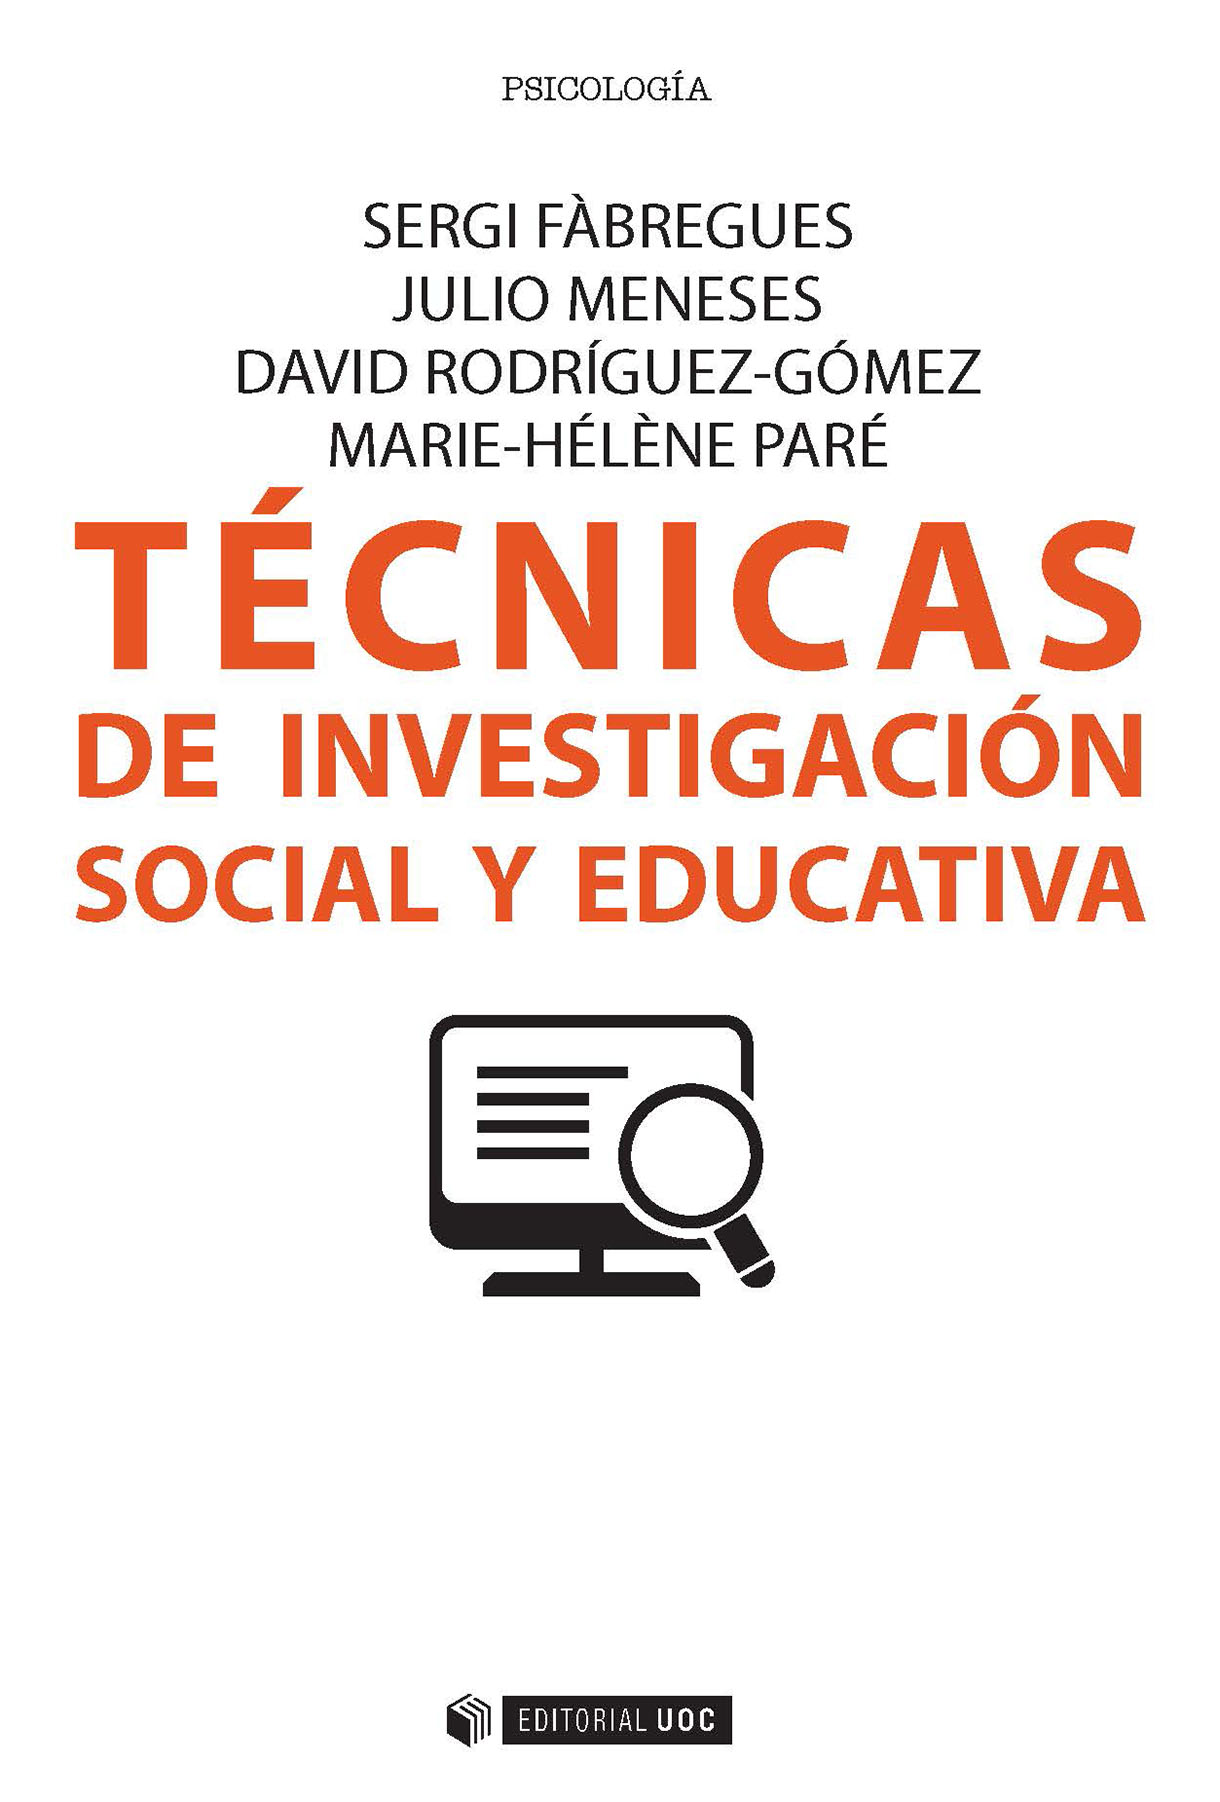 Imagen de portada del libro Técnicas de investigación social y educativa